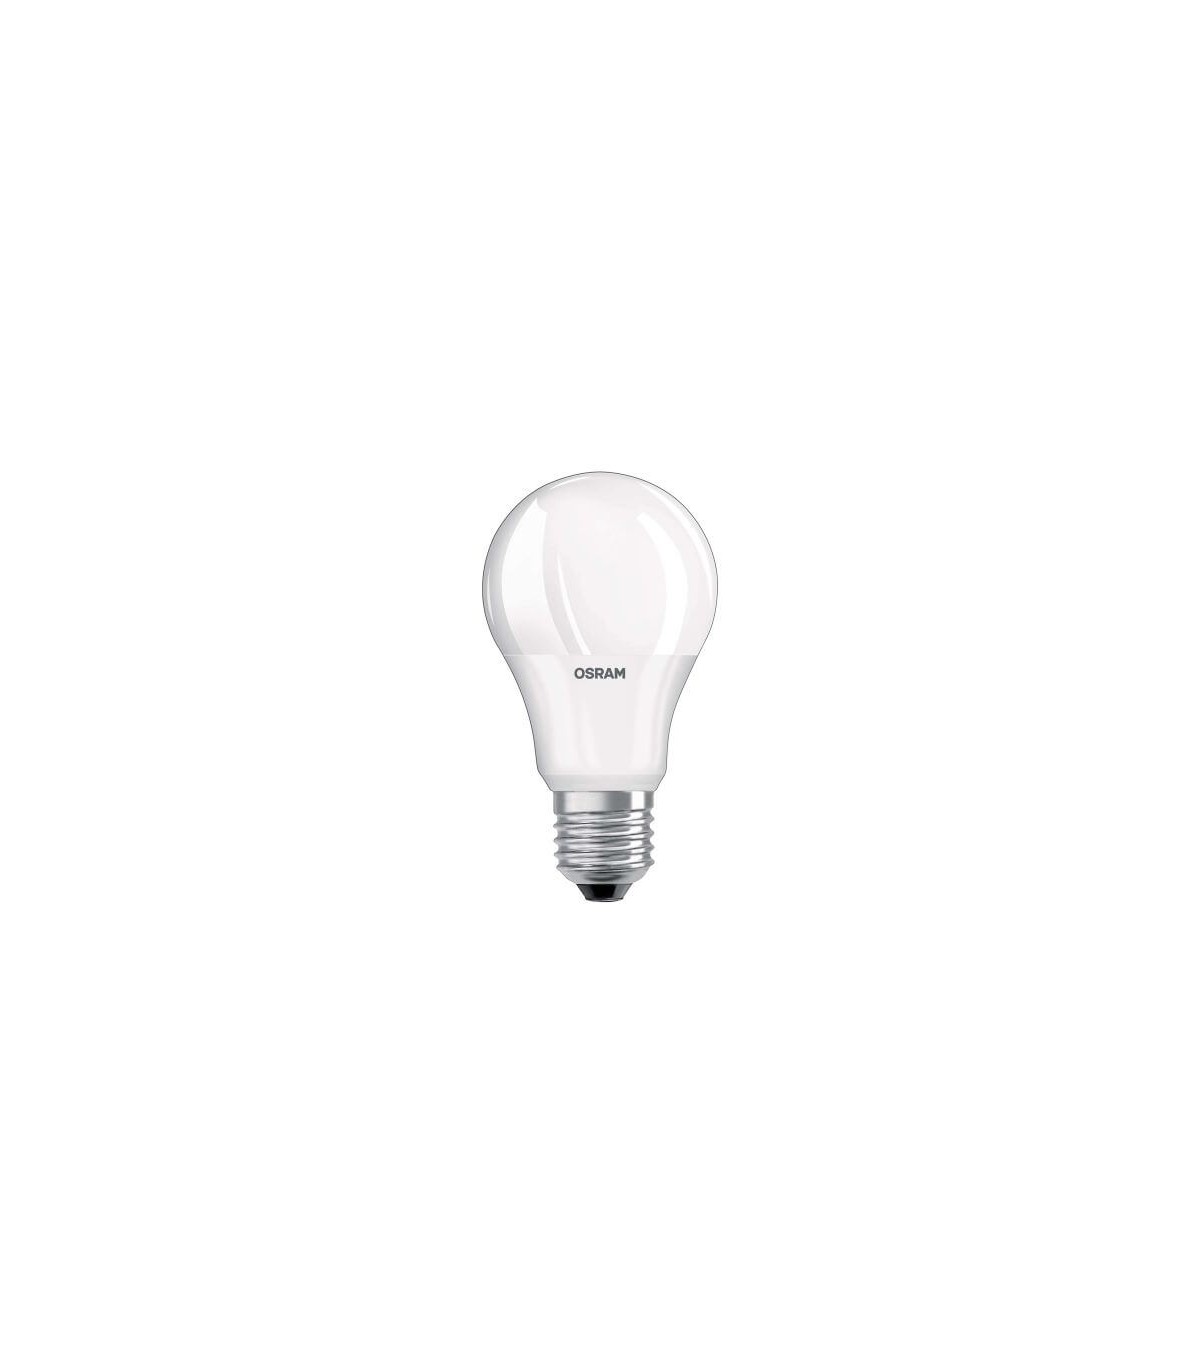 Ampoule 75W E27 230V - Lampe claire incandescente filament